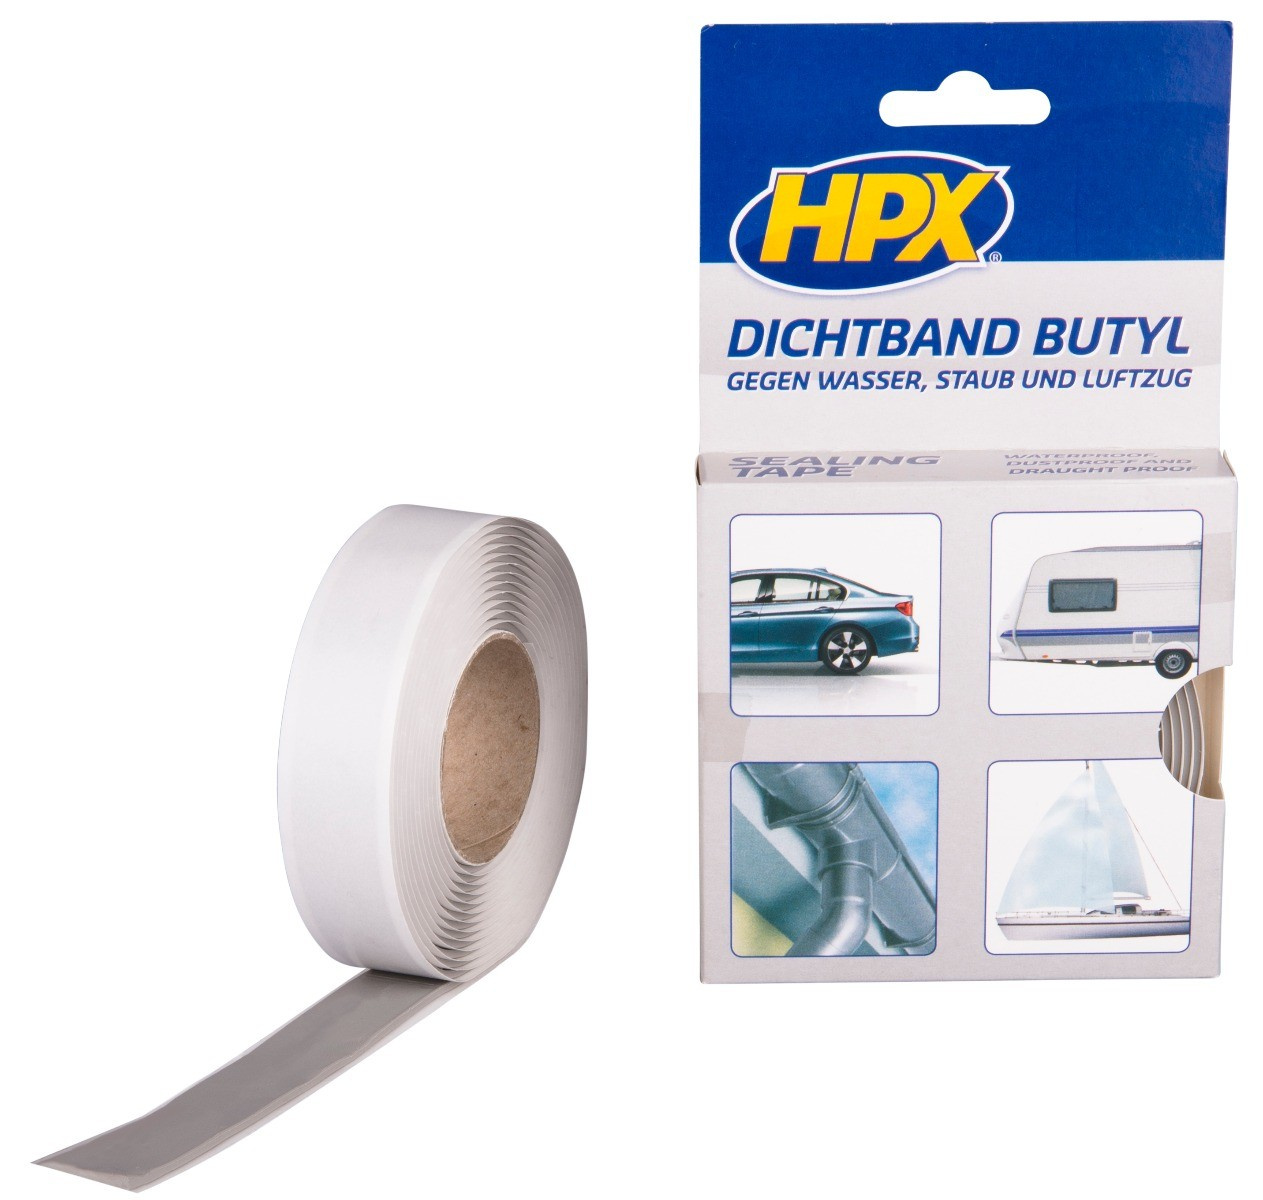 HPX Butyl Dichtband 20mm x 3 meter - CROP